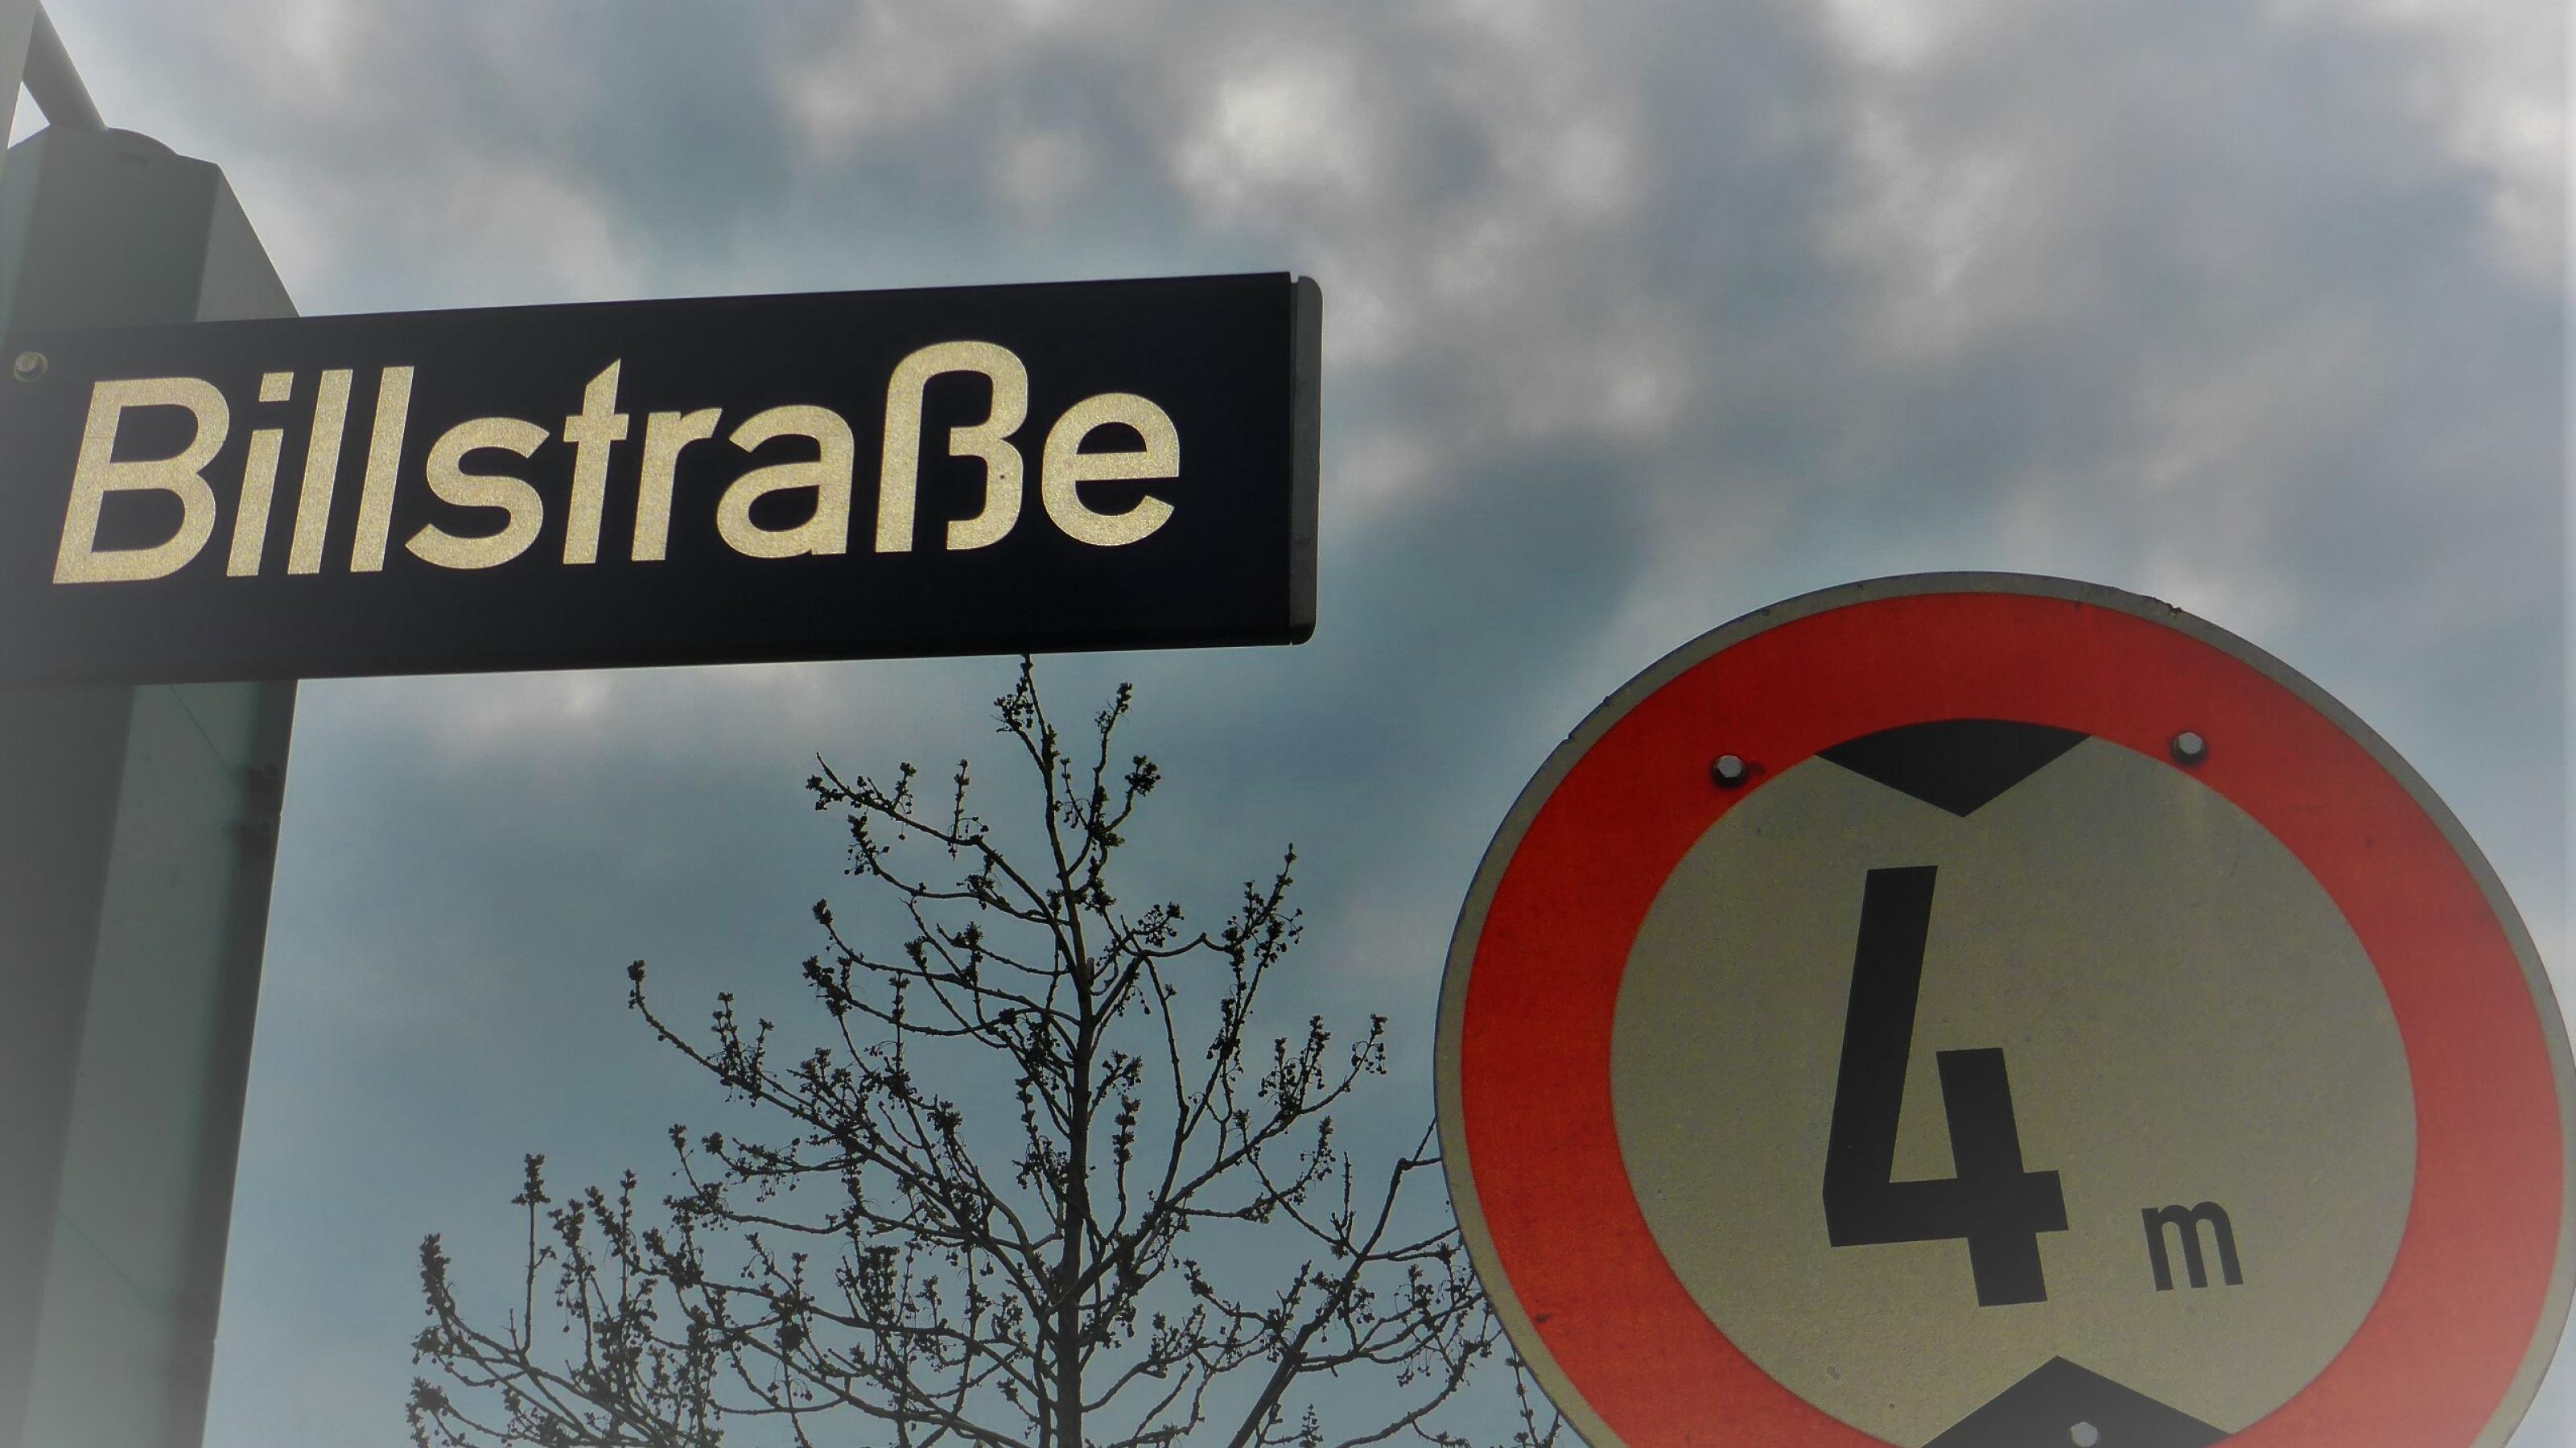 Straßenschild „Billstraße“, daneben ein Warnschild, das Fahrzeugen höher als 4 Metern die Durchfahrt untersagt.